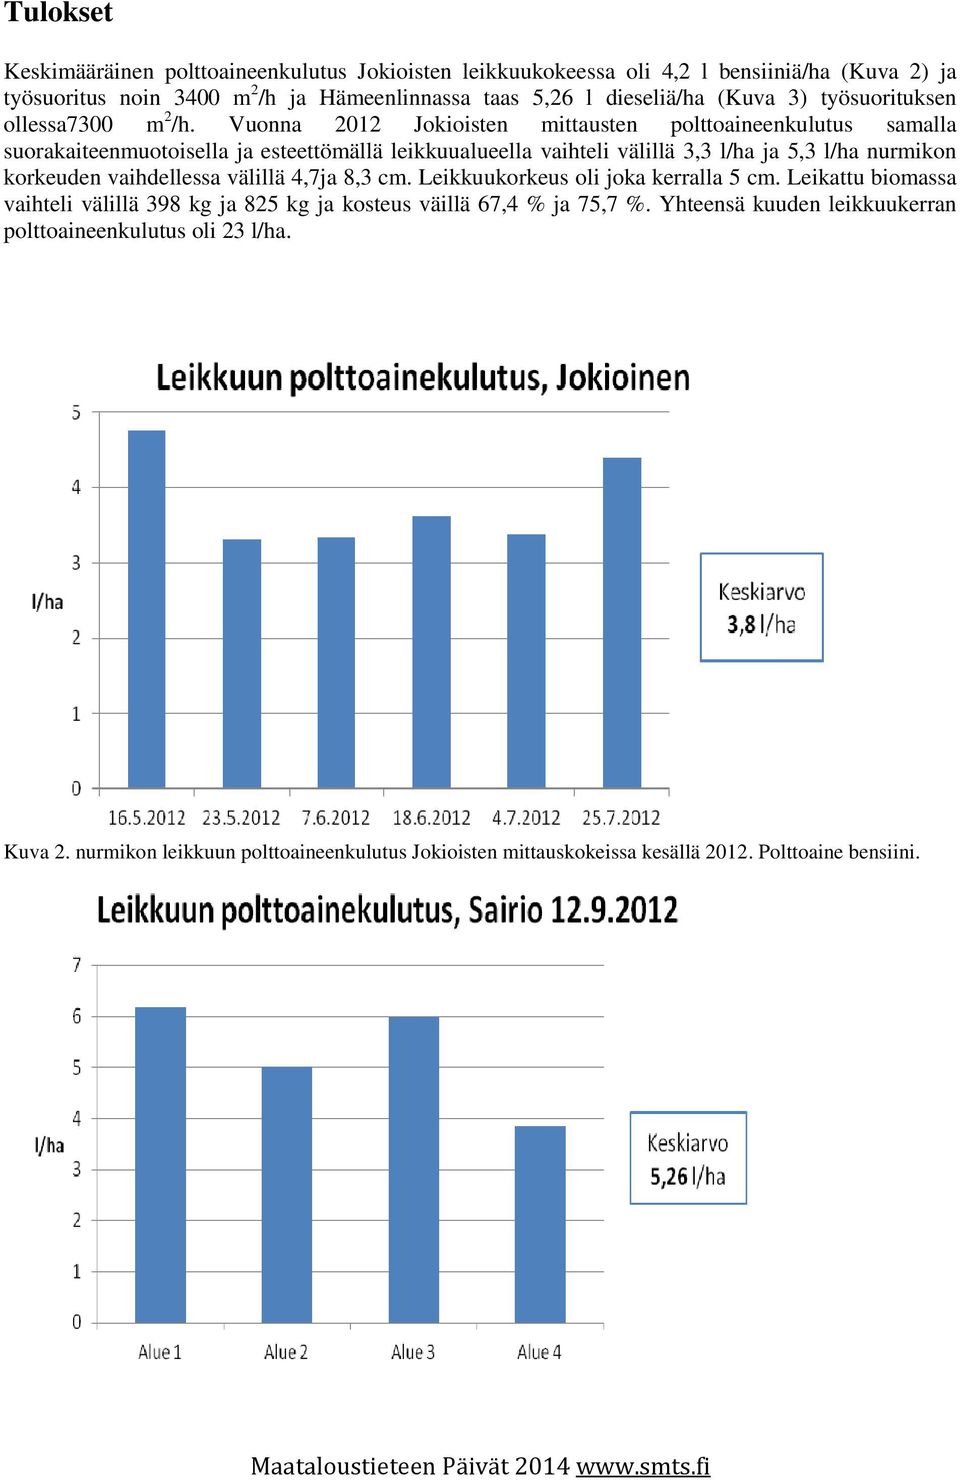 Vuonna 2012 Jokioisten mittausten polttoaineenkulutus samalla suorakaiteenmuotoisella ja esteettömällä leikkuualueella vaihteli välillä 3,3 l/ha ja 5,3 l/ha nurmikon korkeuden